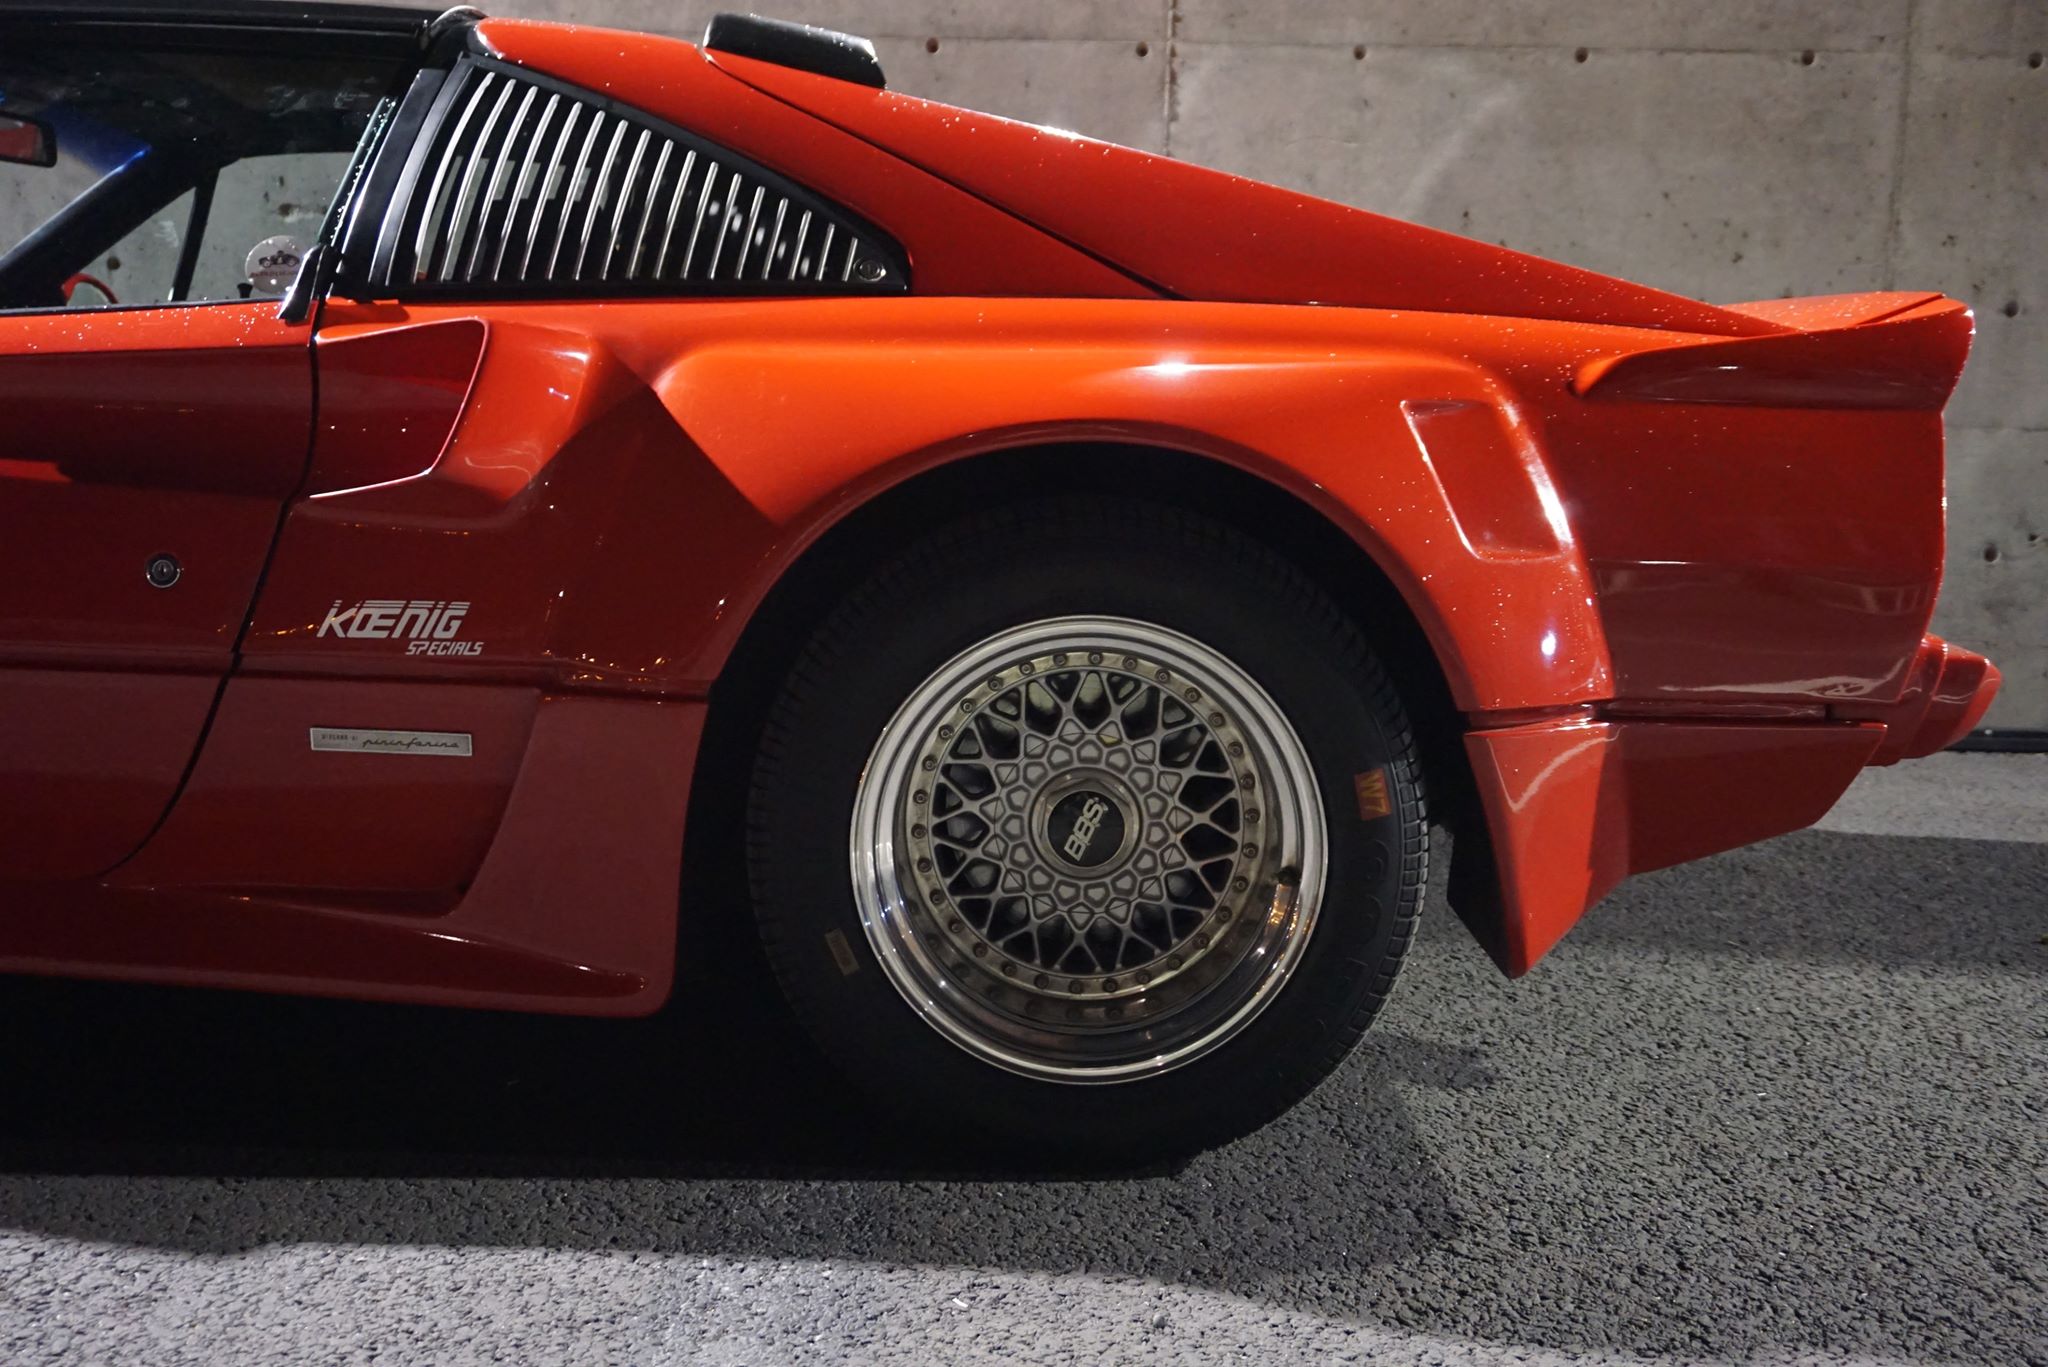 Ukas bil – 1984 Ferrari 308 Koenig Specials